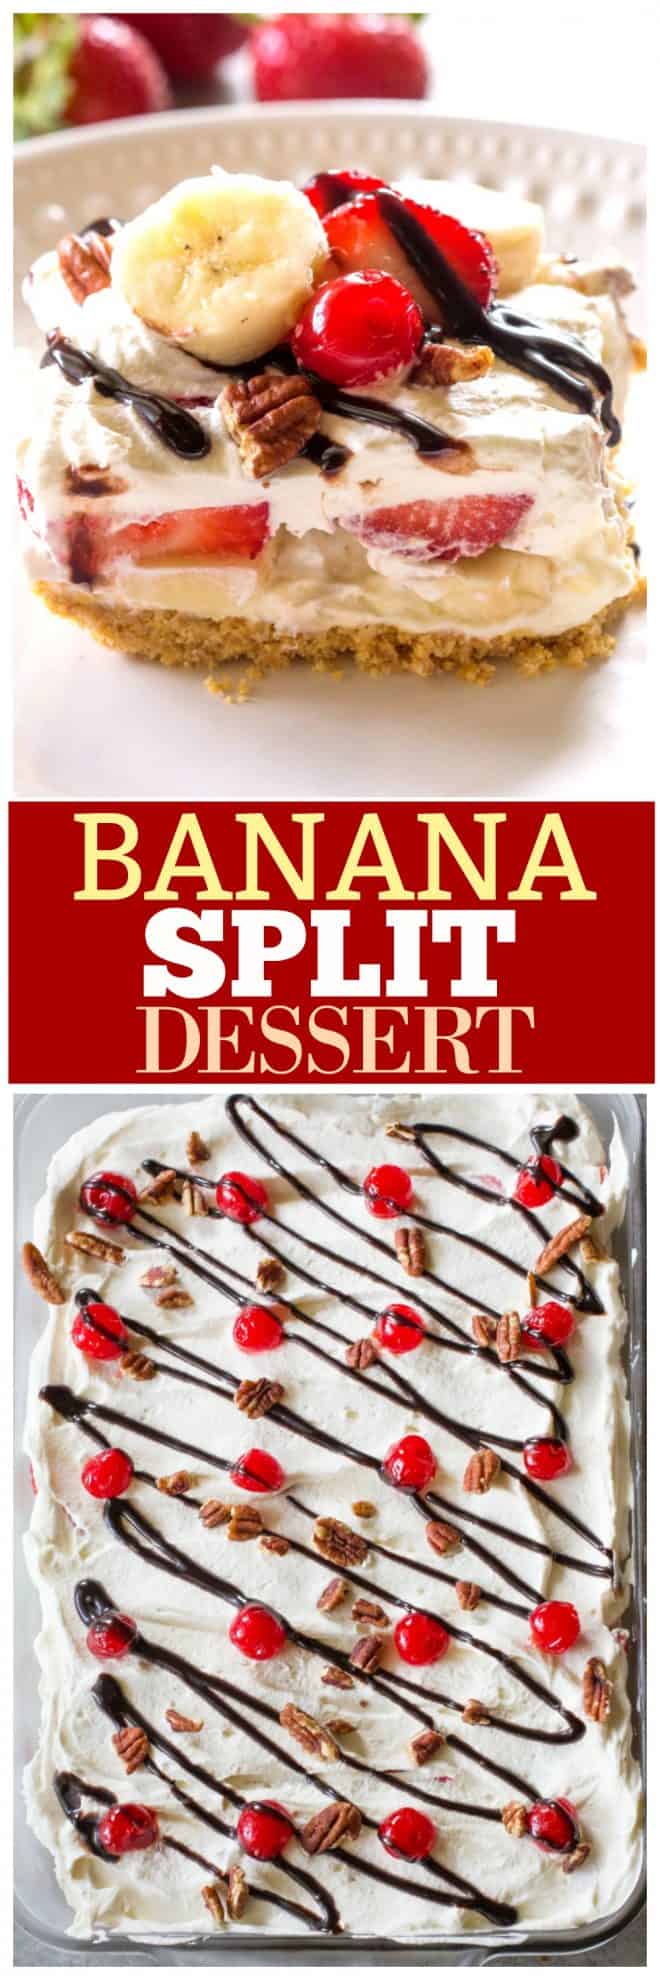 fb image - Banana Split Dessert